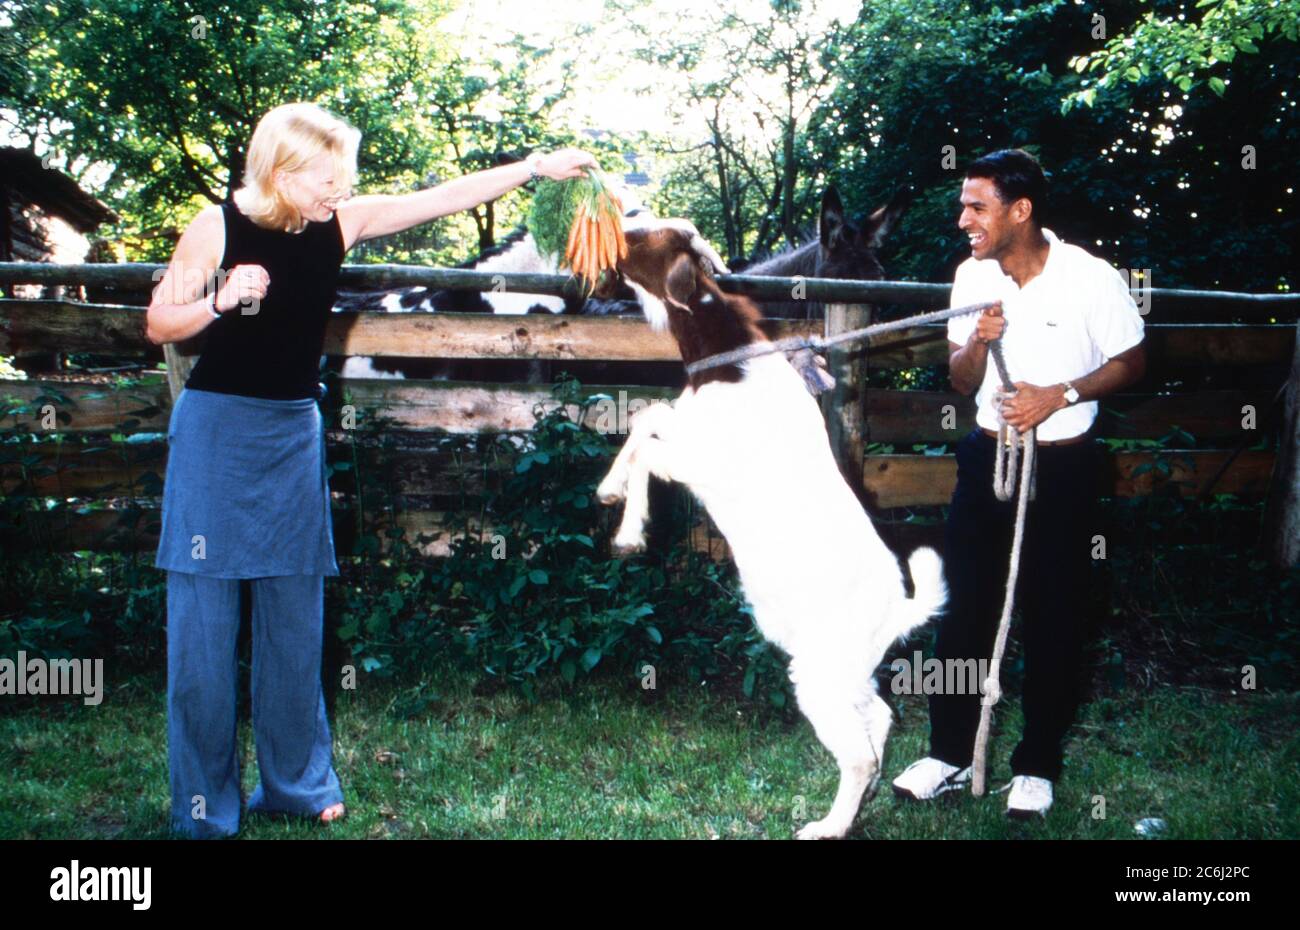 Michael Dierks und Diana Staehly, beide Schauspieler, füttern eine Ziege mit Karotten, Deutschland 1999. Stock Photo